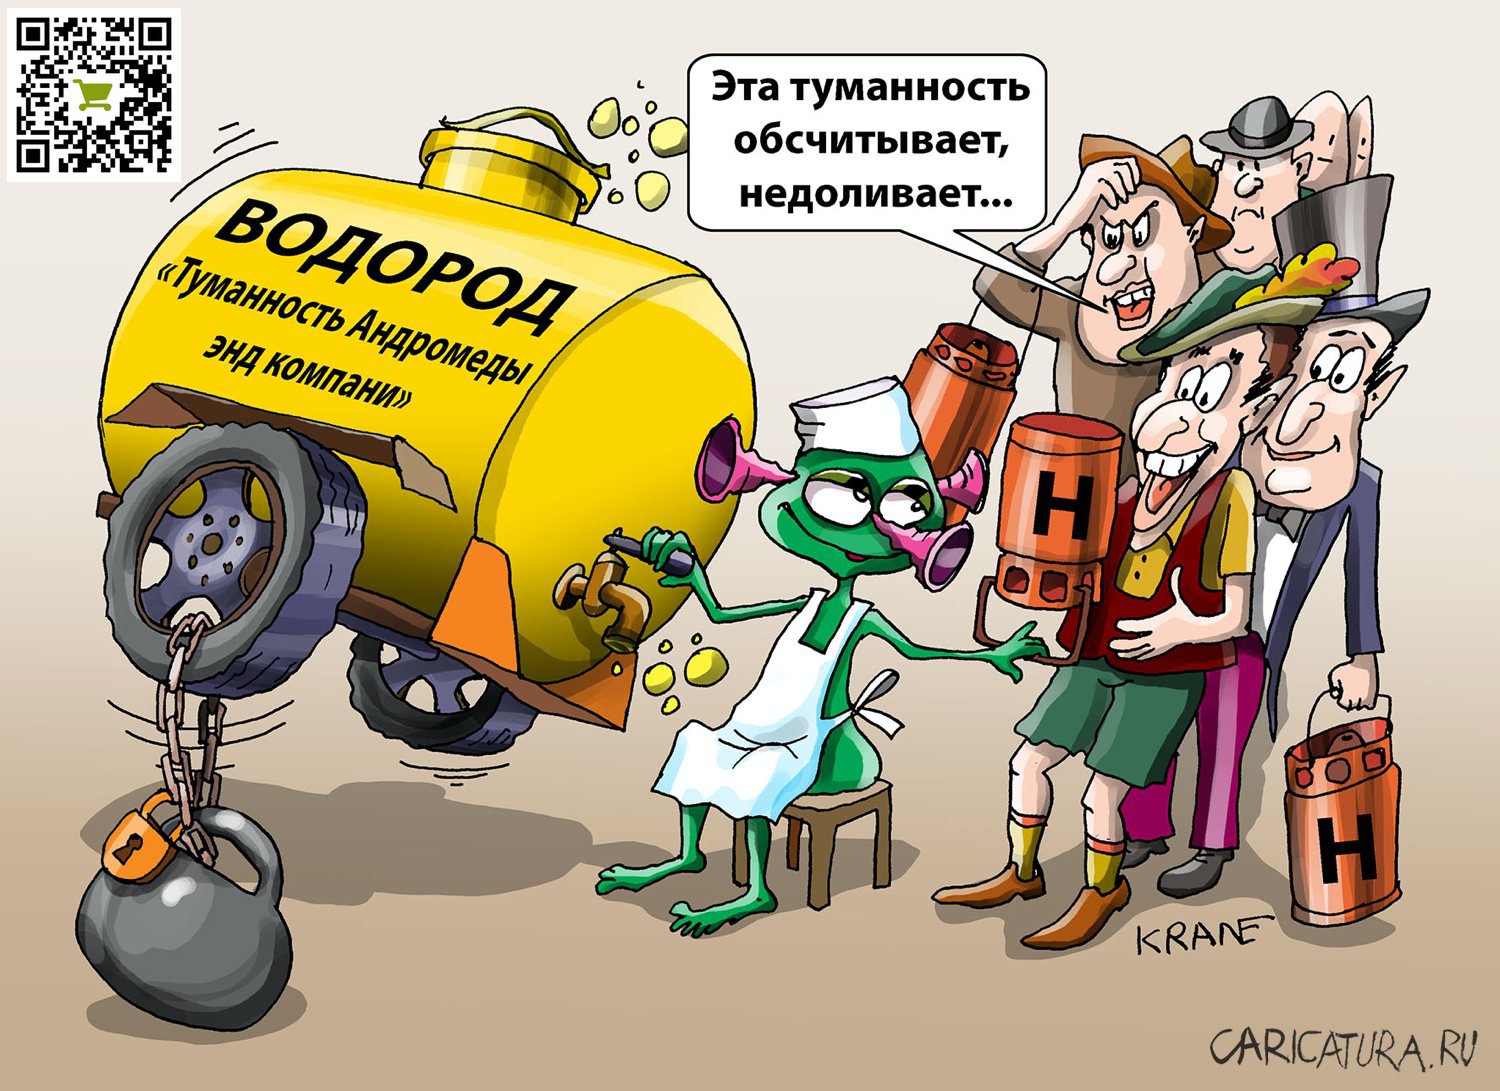 Карикатура "Одно - слышим, другим - дышим", Евгений Кран